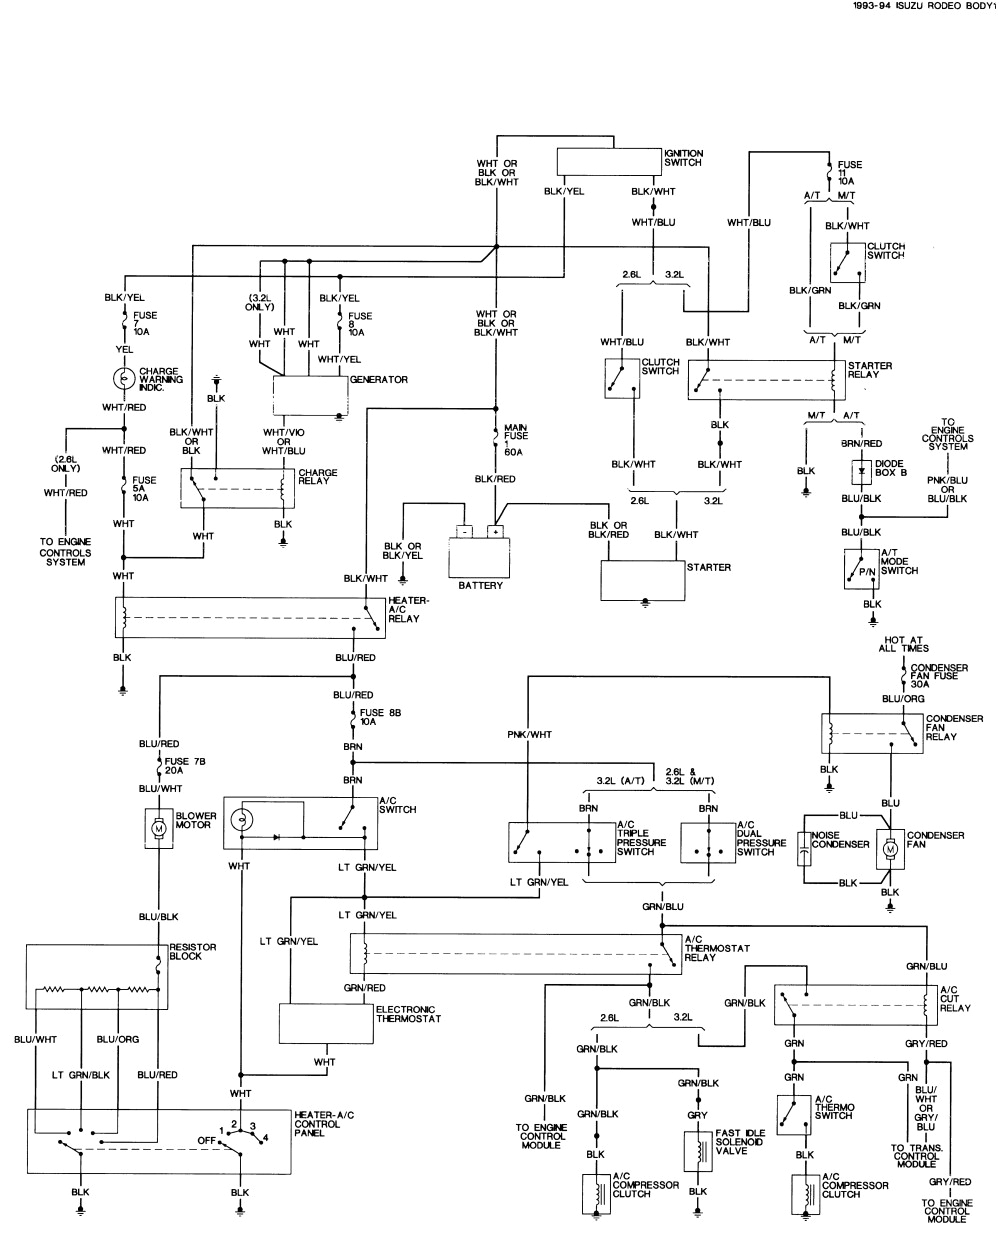 1992 isuzu npr wiring book diagram schema isuzu npr wiring diagram 2004 isuzu npr wiring